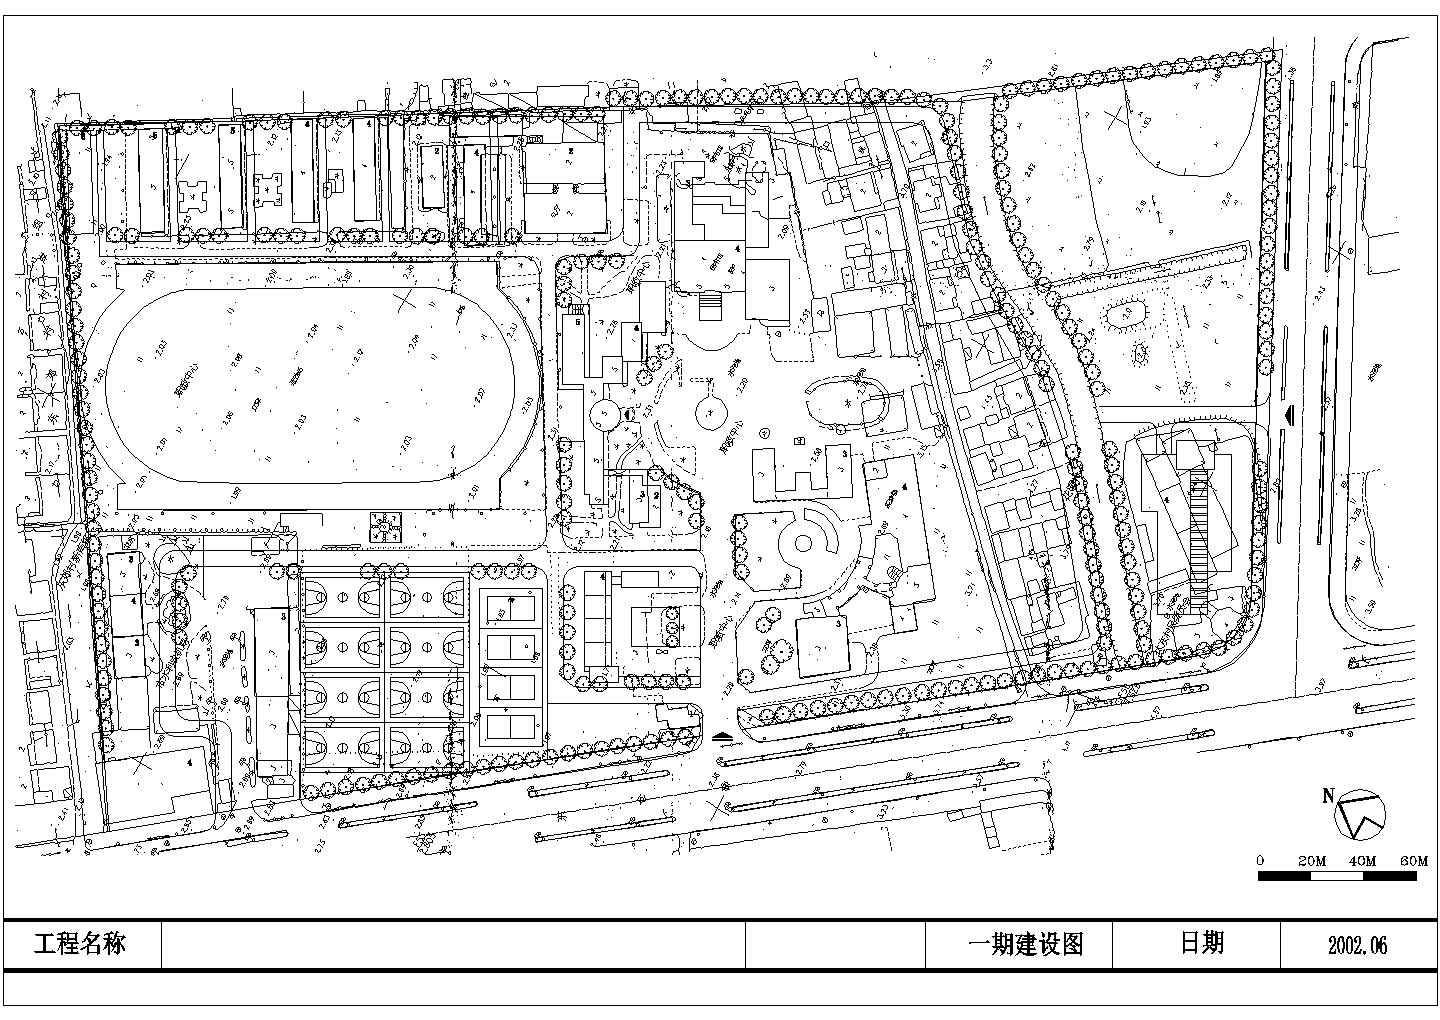 江苏某太仓某职教中心校园扩建全套施工设计cad图纸